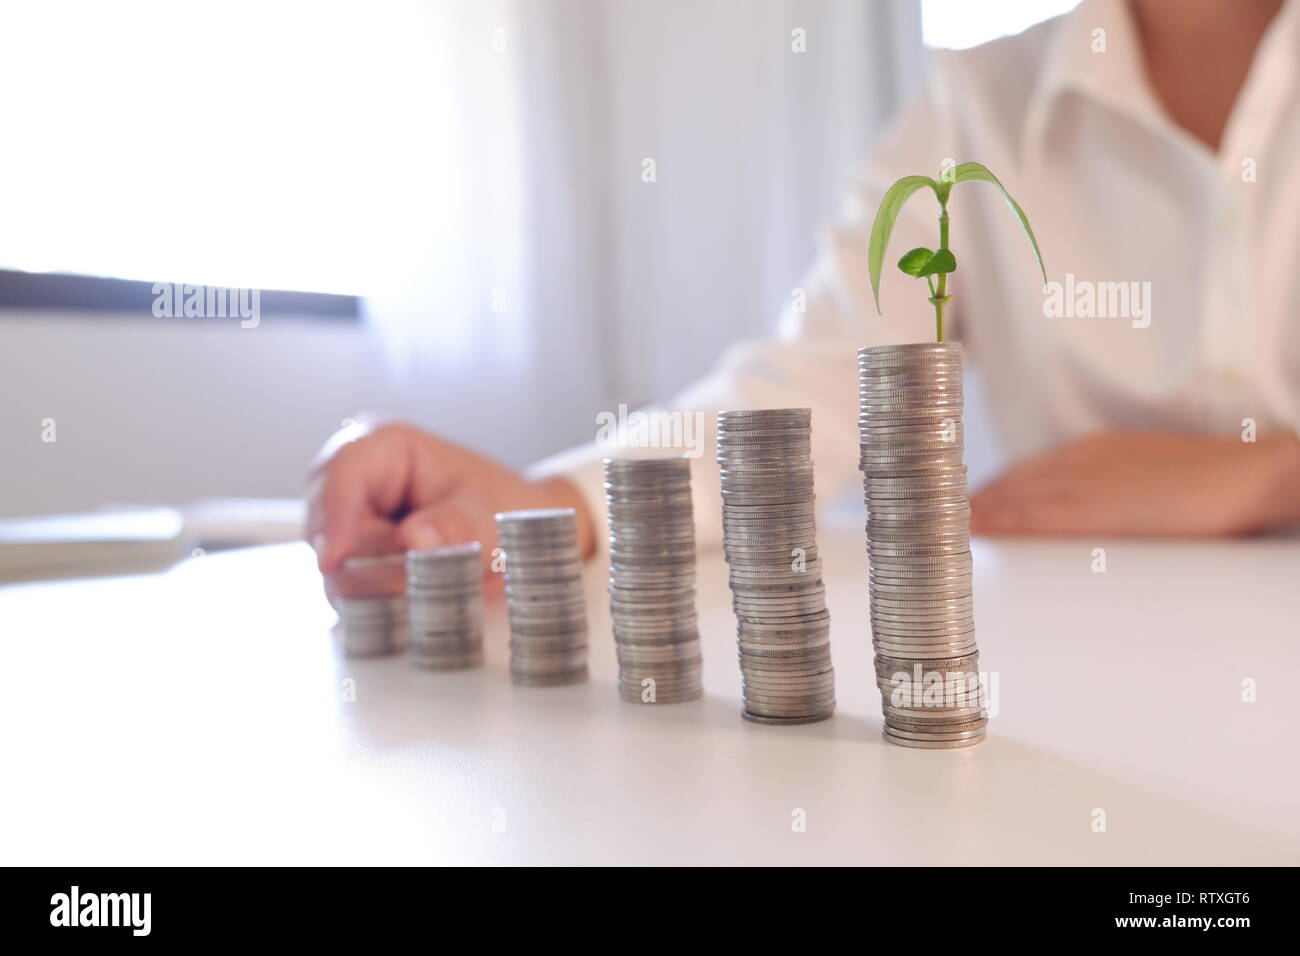 Wachsende Pflanze auf coin stack Zeile von Münzen, die für den Finanz- und Banksektor Konzept Stockfoto